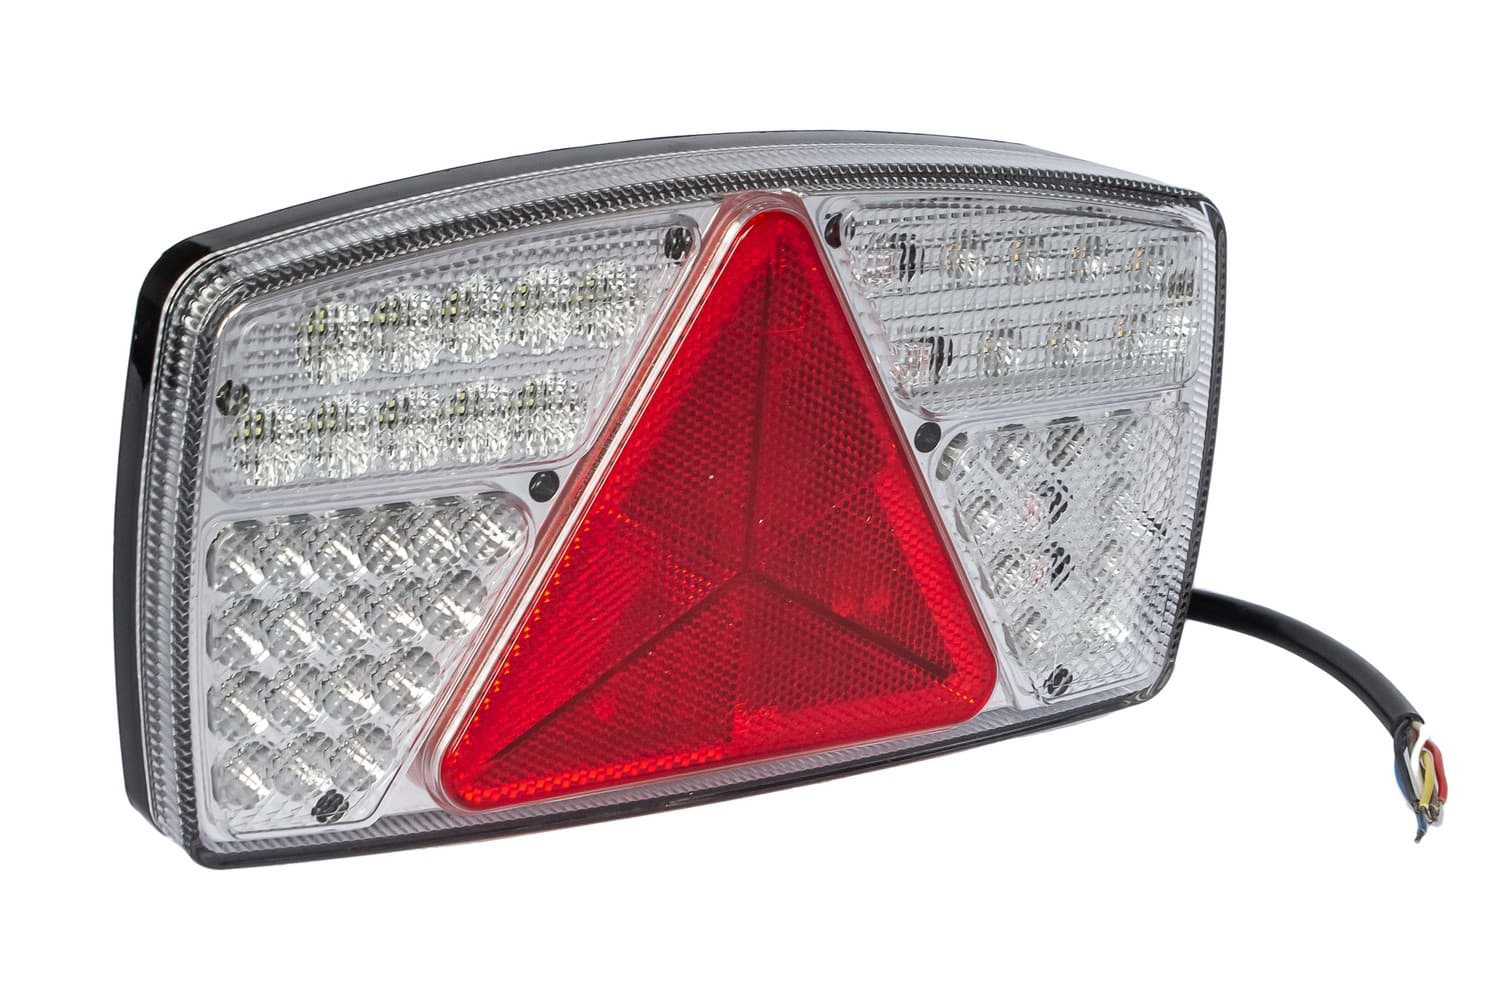 LED-Rückleuchten für Anhänger - TRALERT® LED-Fahrzeugbeleuchtung